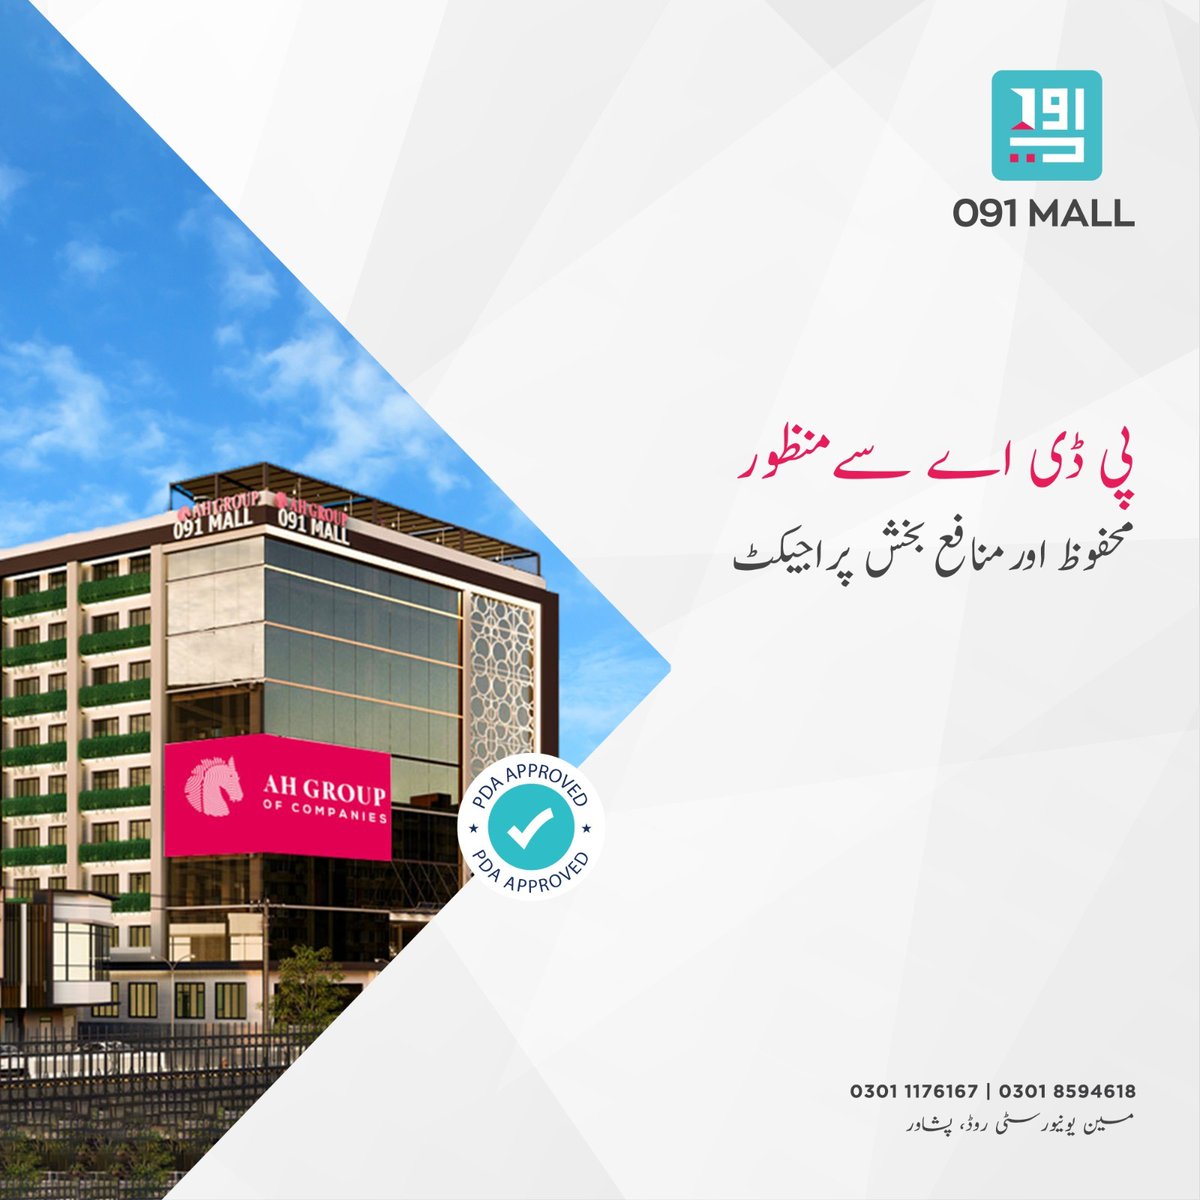 مین یونیورسٹی روڈ کی  بہترین لوکیشن کا حامل 091 مال دیتا ہے آپ کو ضمانت محفوظ اور منافع بخش سرمایہ کاری کی کیونکہ یہ پراجیکٹ ہے پی ڈی اے سے منظور شدہ۔

#091Mall #ShoppingMall #UniversityRoadPeshawar #peshawar #KPK